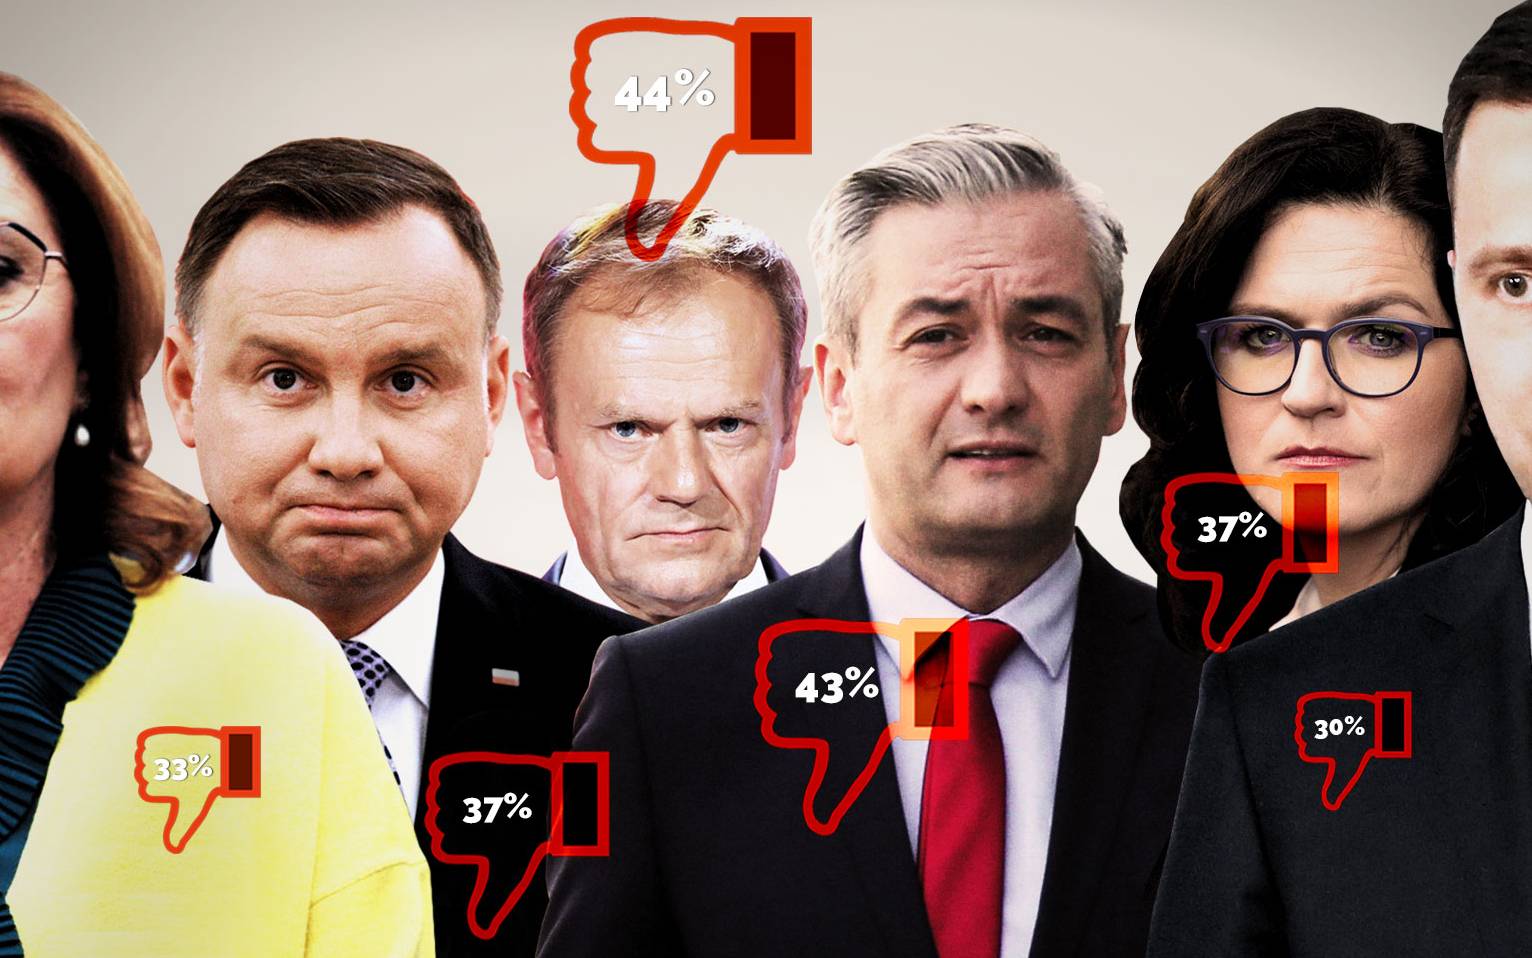 Grafika do artykułu Na kogo na pewno nie, czyli ranking nie-prezydentów. Tusk i Biedroń niewybieralni?